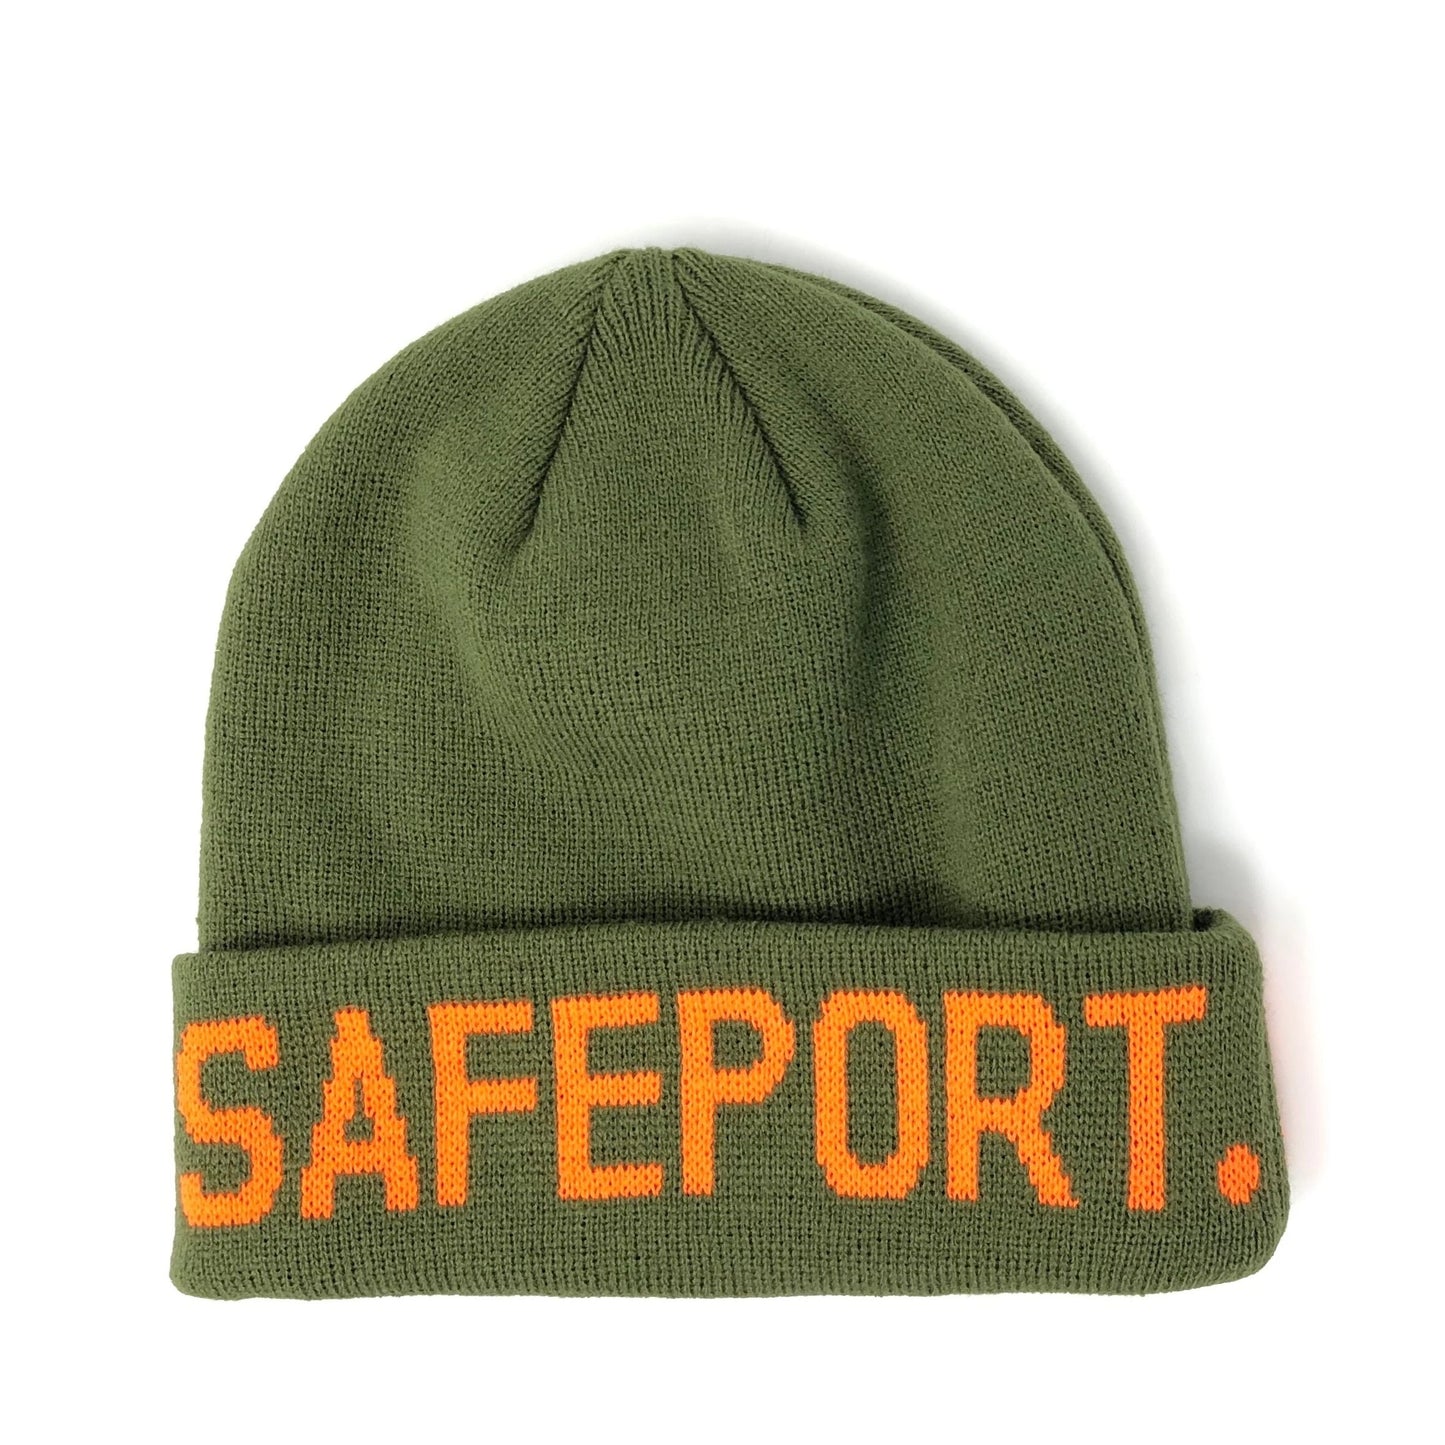 Safeport OG Beanie-Green